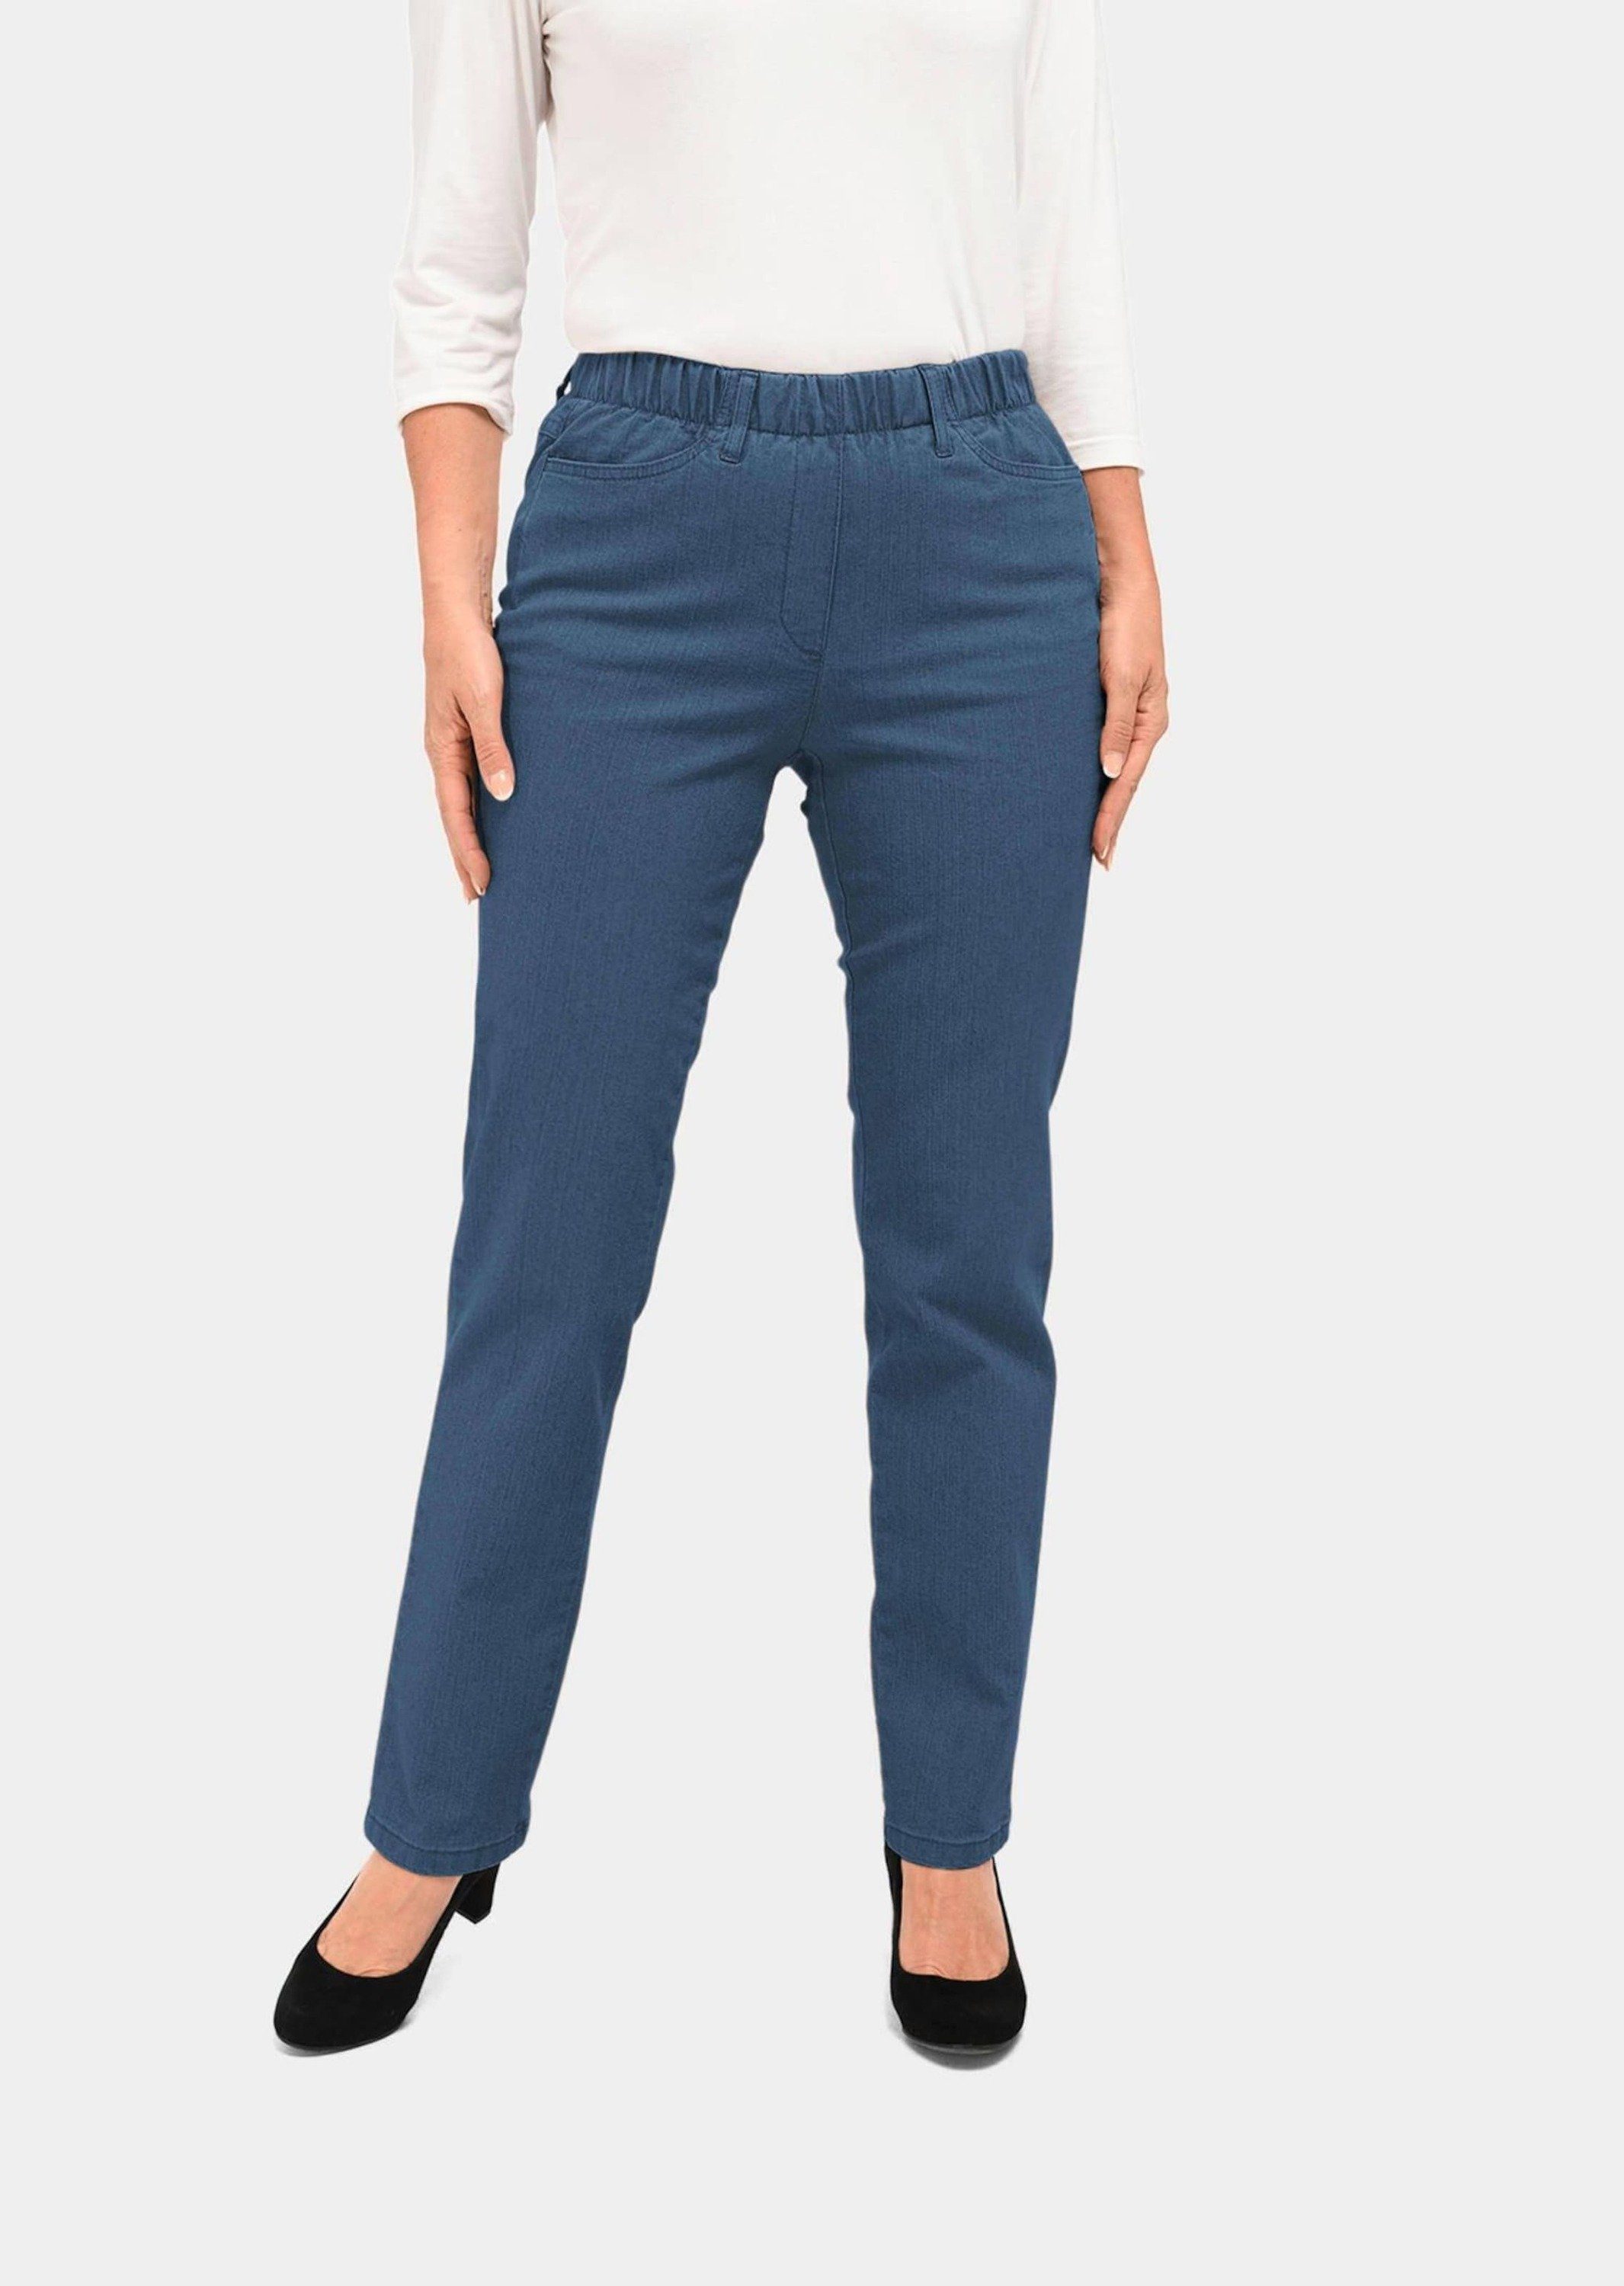 [Neueste Mode] GOLDNER Bequeme Jeans Kurzgröße: Klassische Jeansschlupfhose hellblau LOUISA